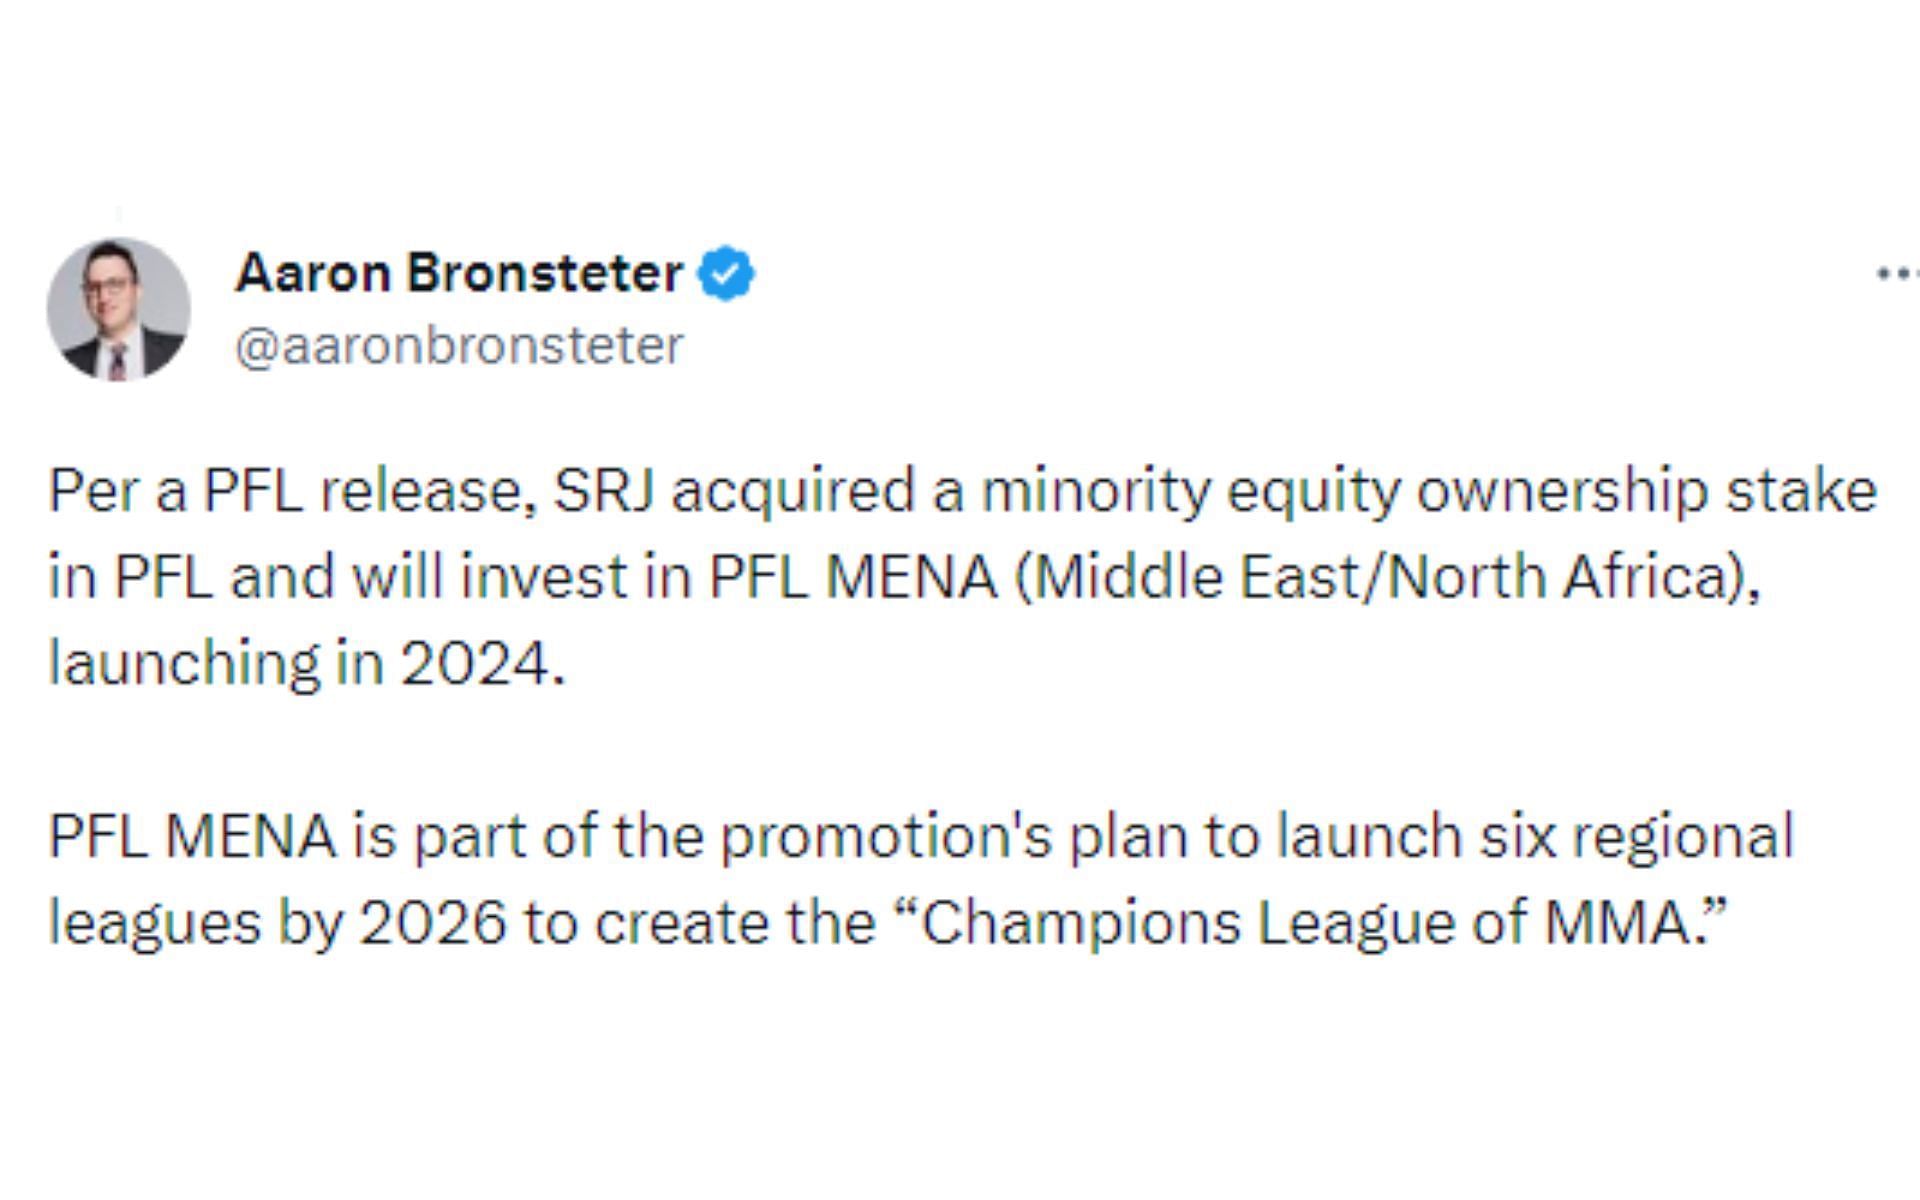 Aaron Bronsteter tweet regarding Champions League of MMA